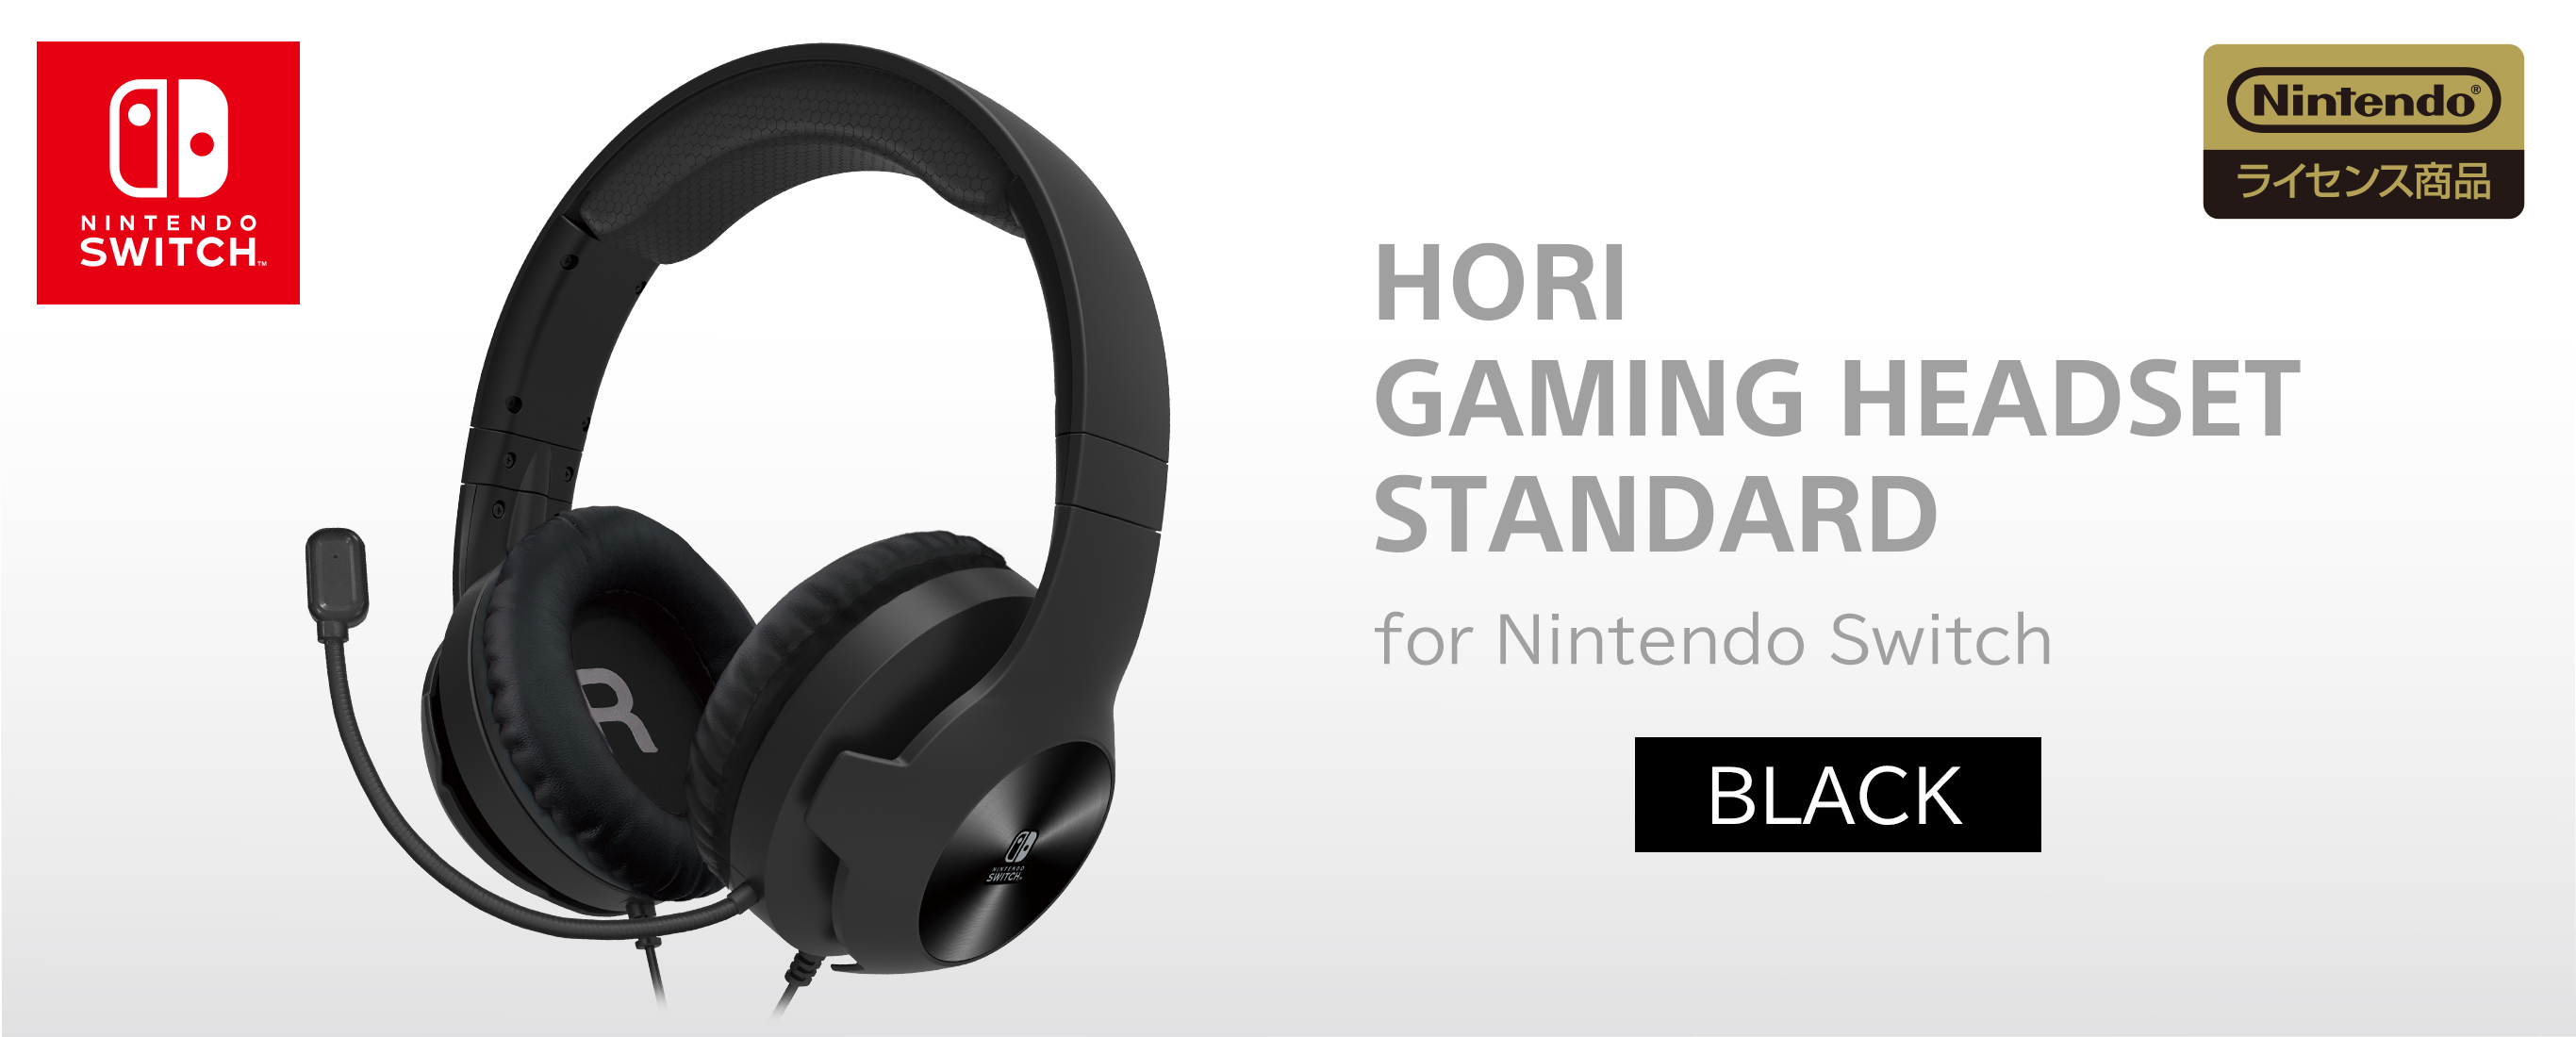 株式会社 HORI | ホリゲーミングヘッドセット スタンダード for Nintendo Switch ブラック